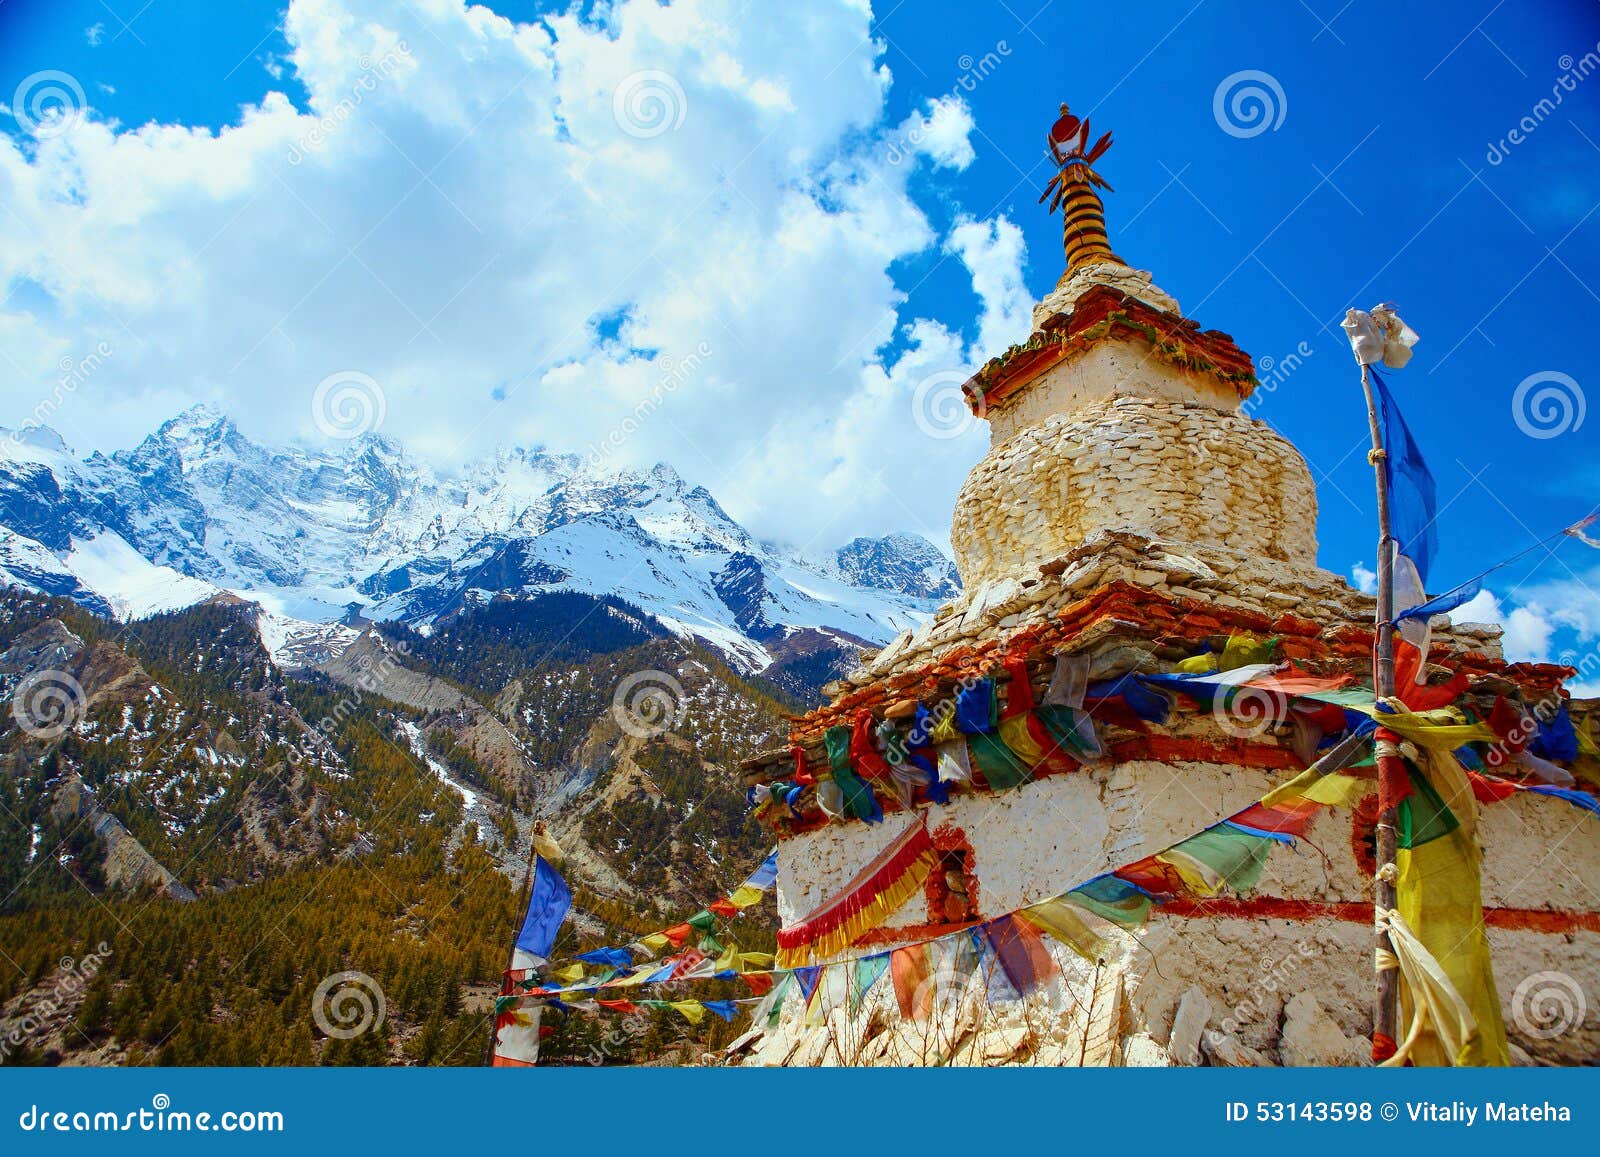 stupa in nepal